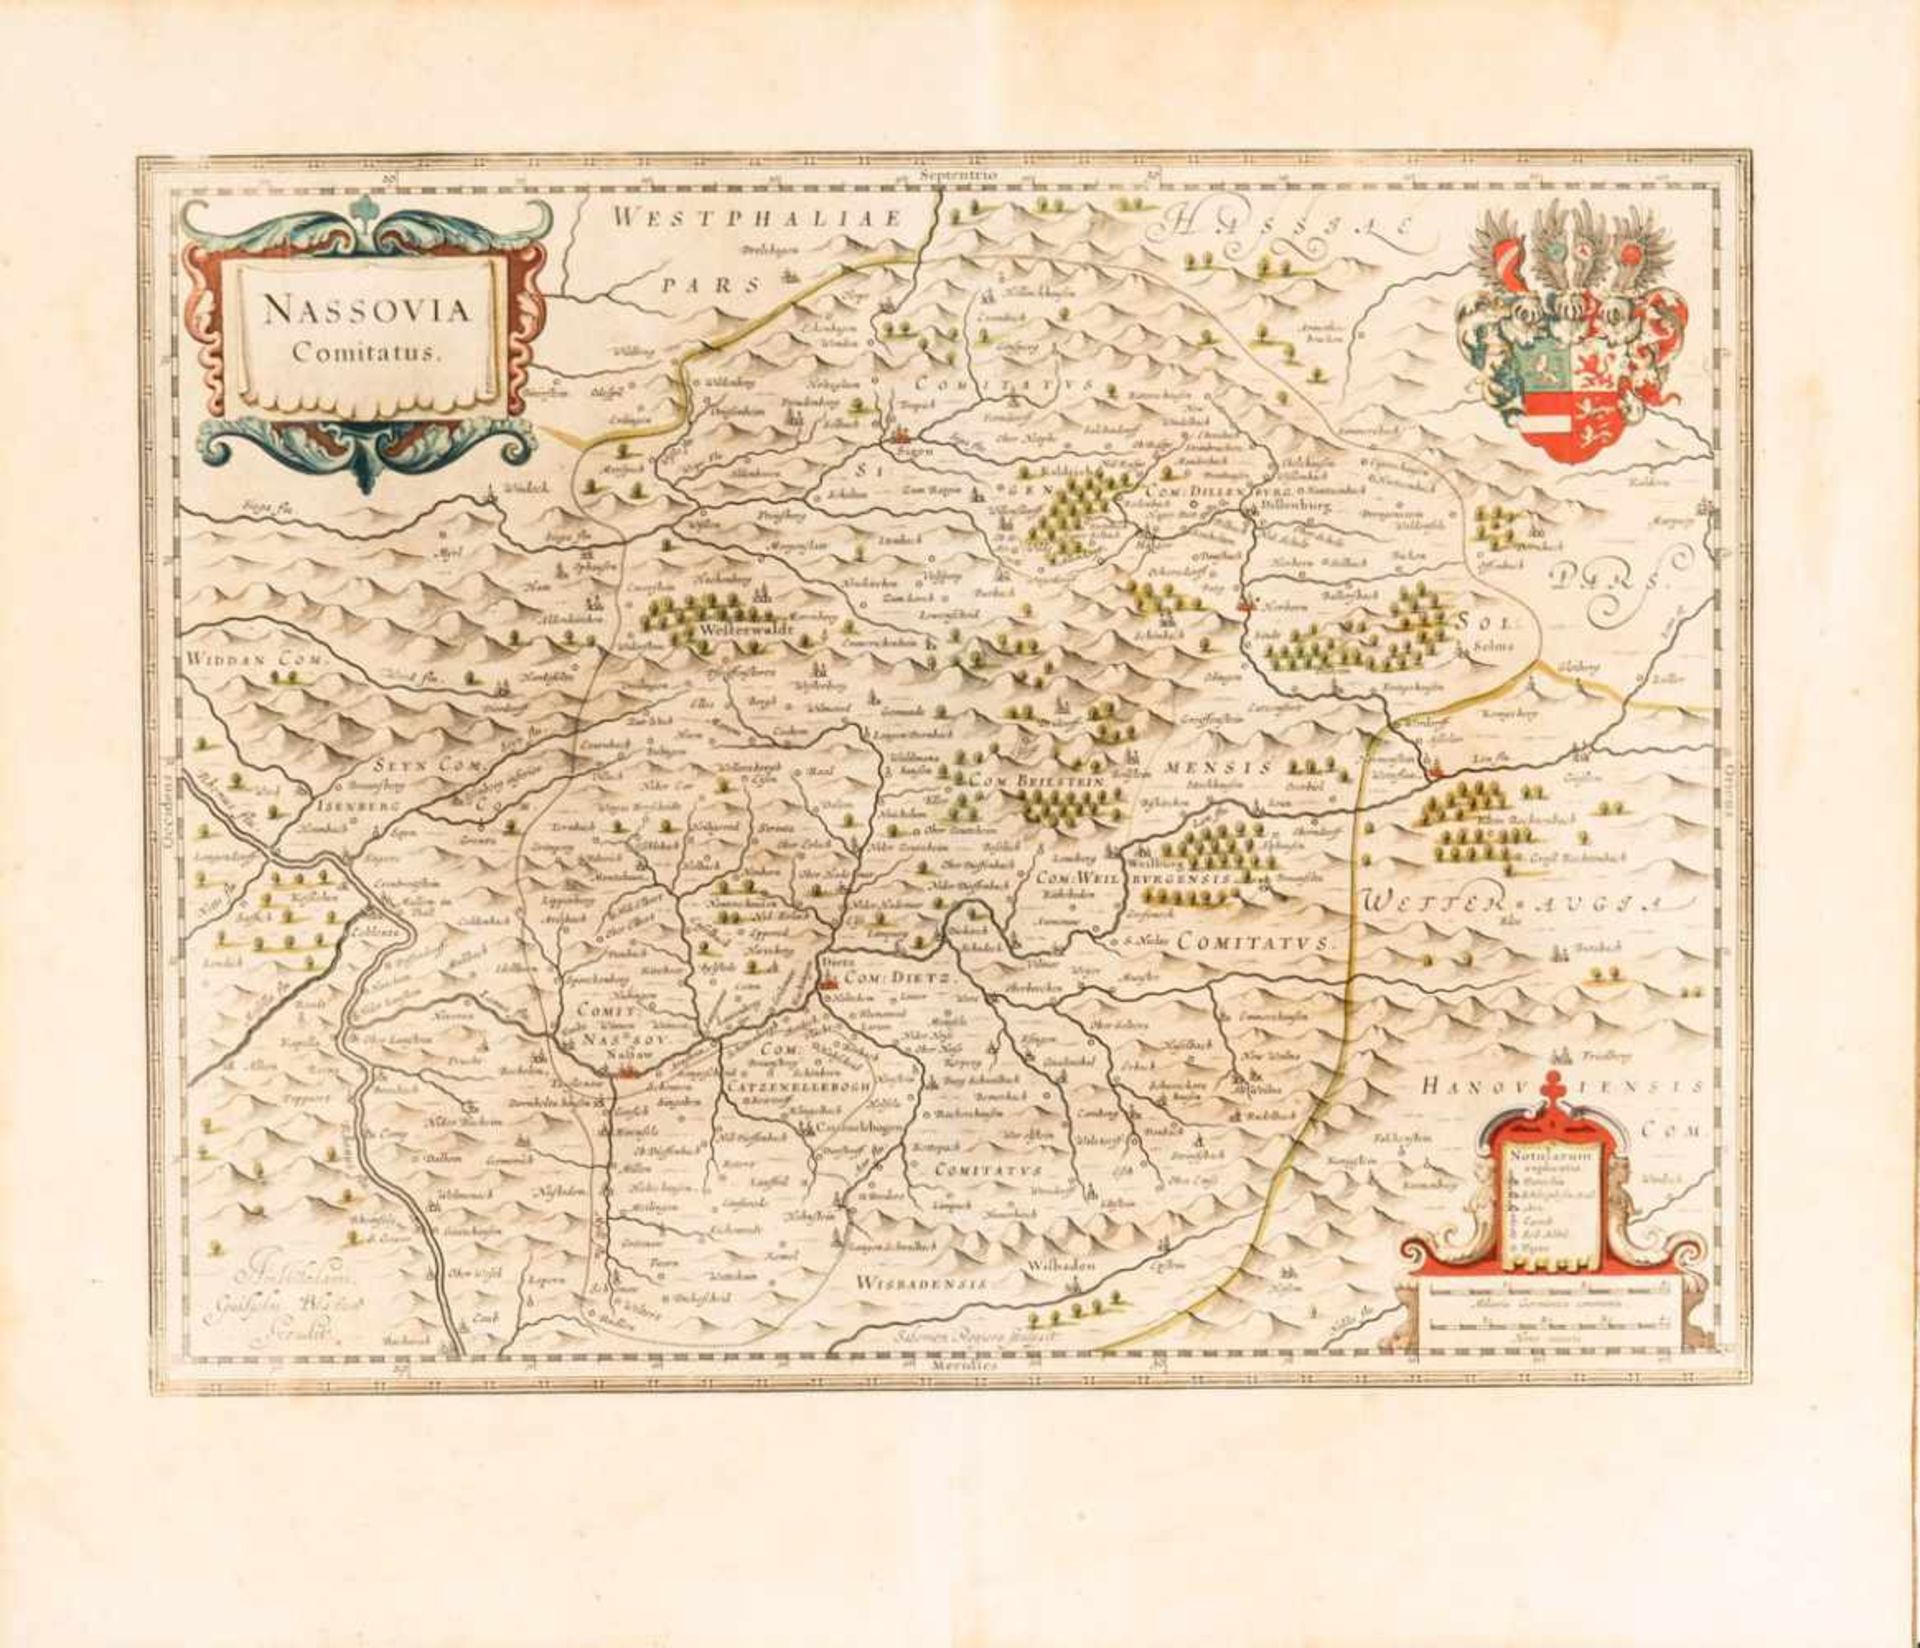 Landkarte "Nassovia Comitatus"(Grafschaft Nassau), aus dem Atlas novus von Willem Blaeu, Amsterdam